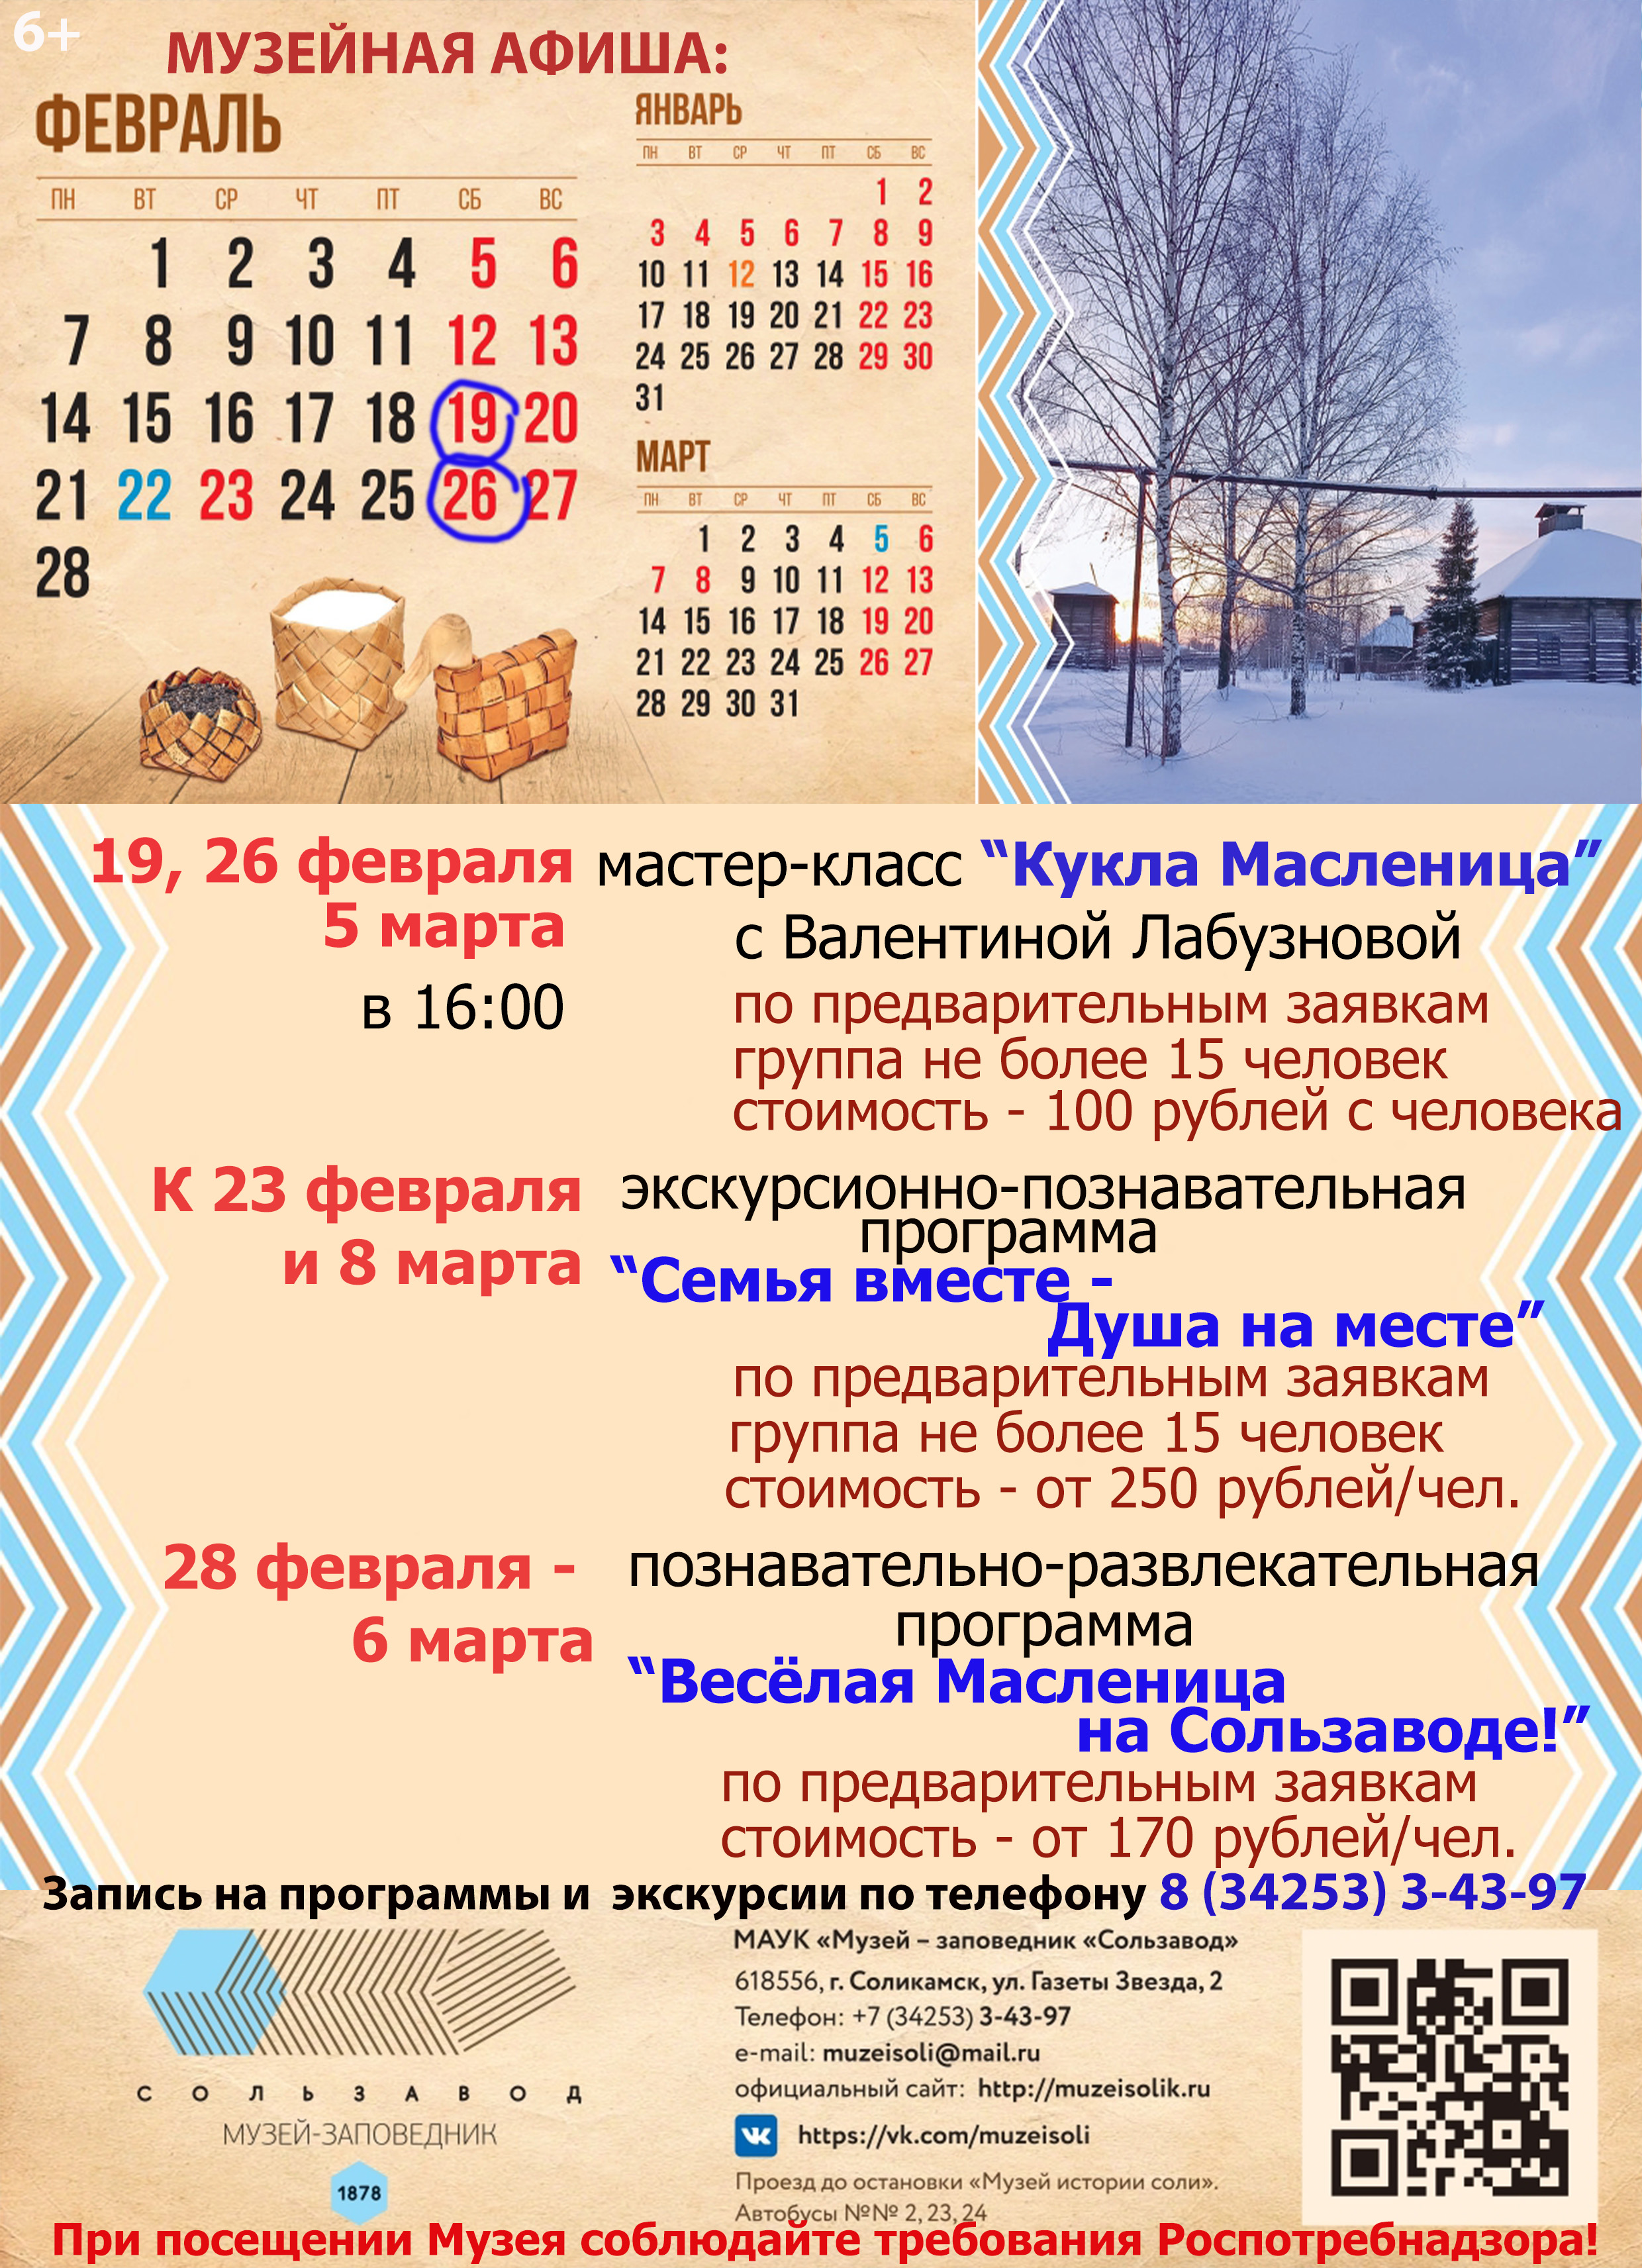 ФЕВРАЛЬ календарь МЗС